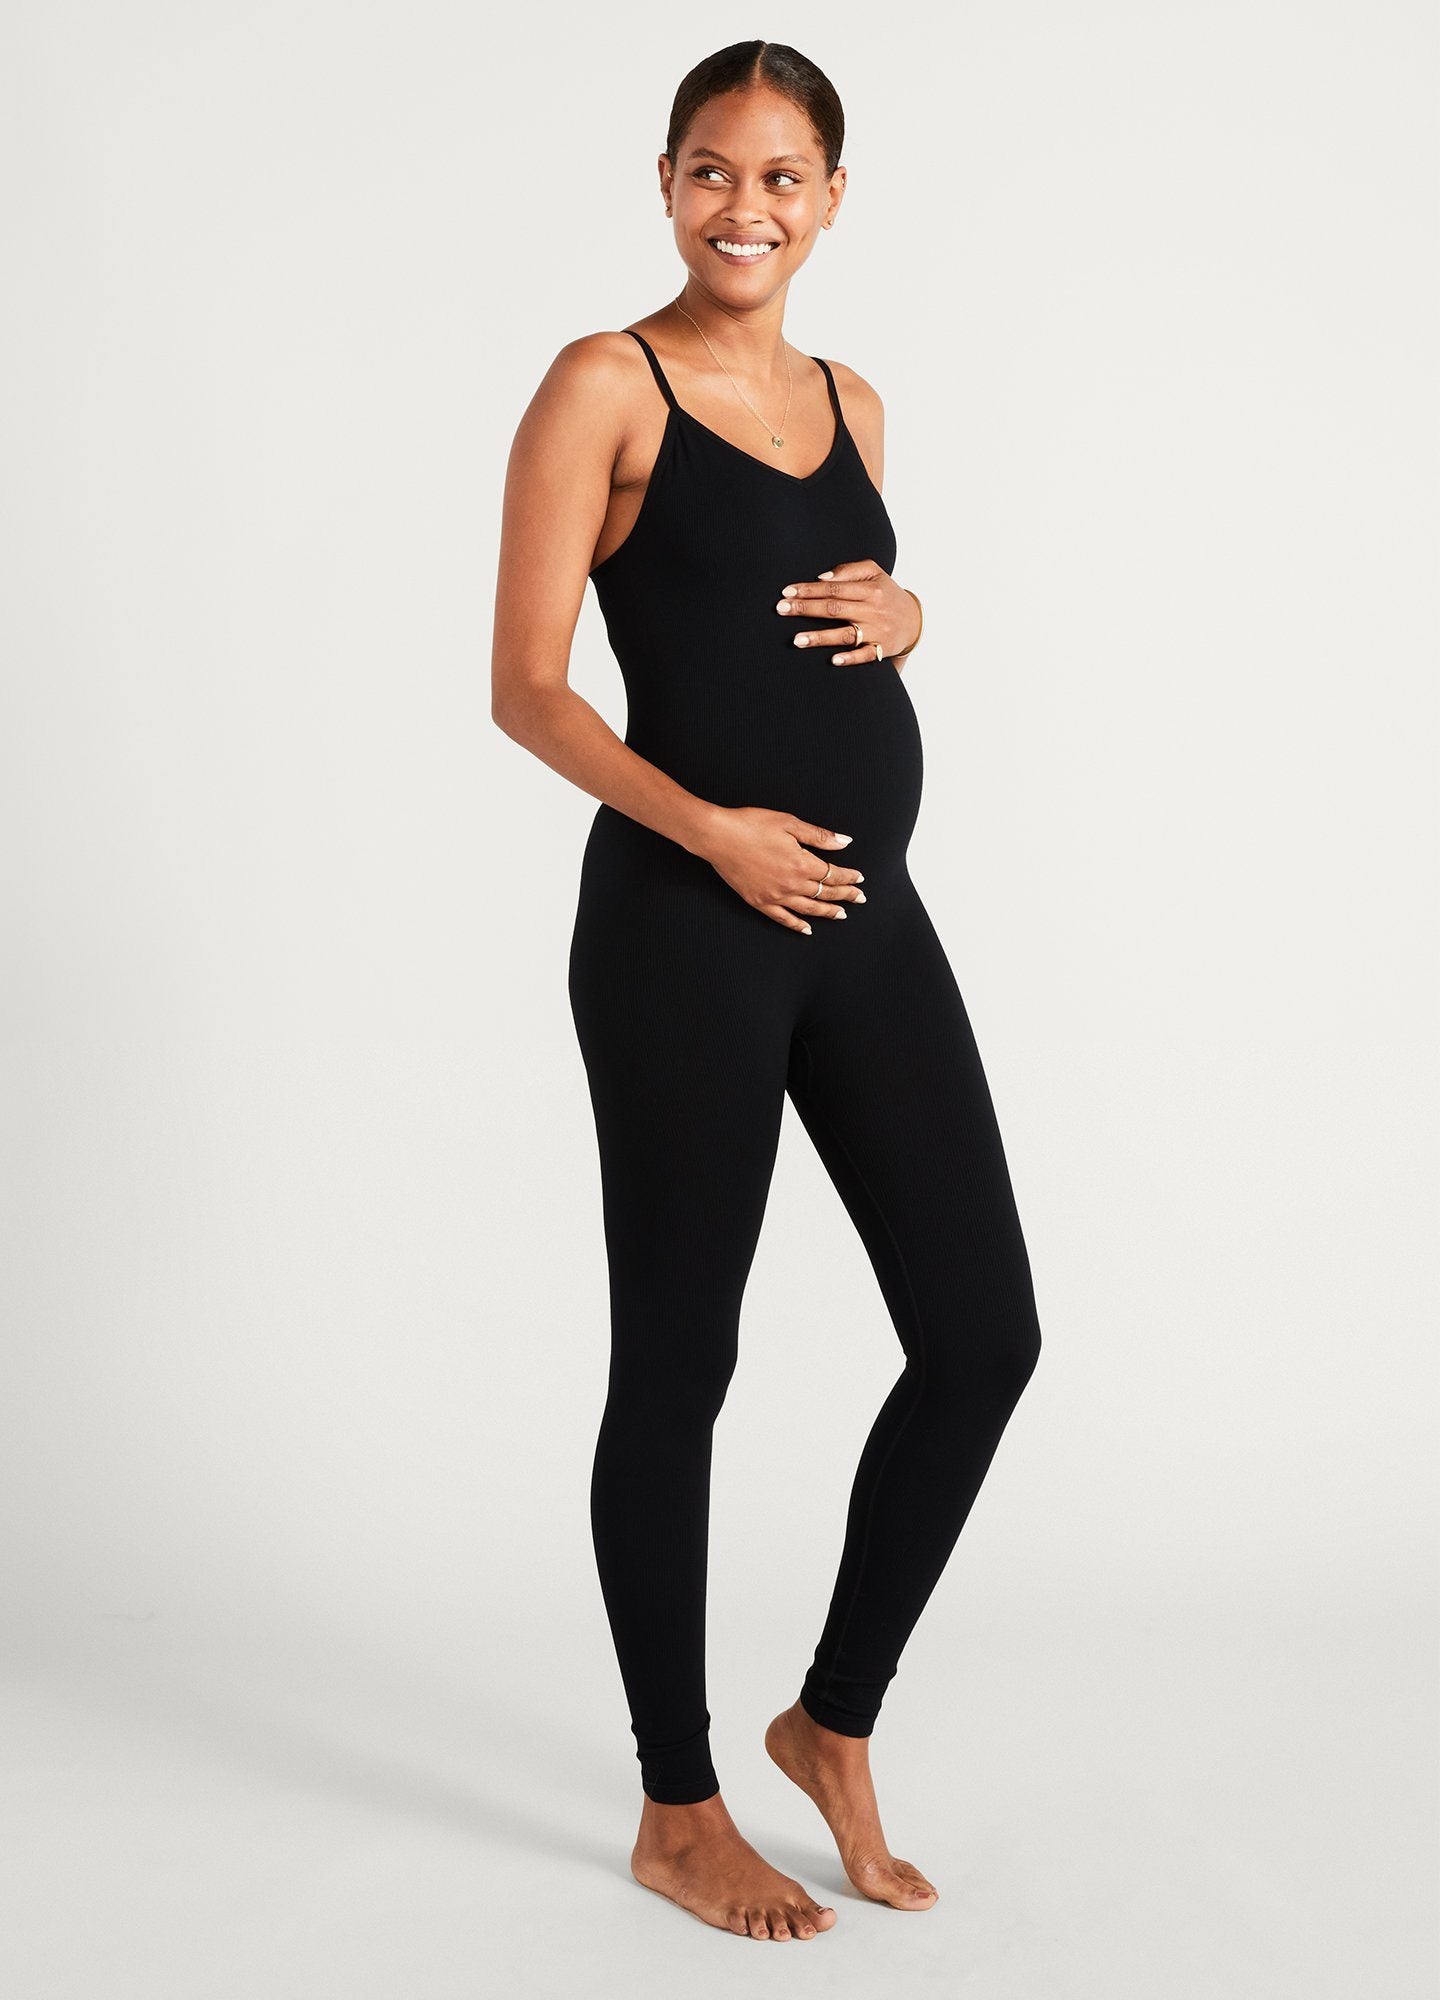 Buy JoJo Maman Bébé Black Postnatal Support Leggings from Next Canada